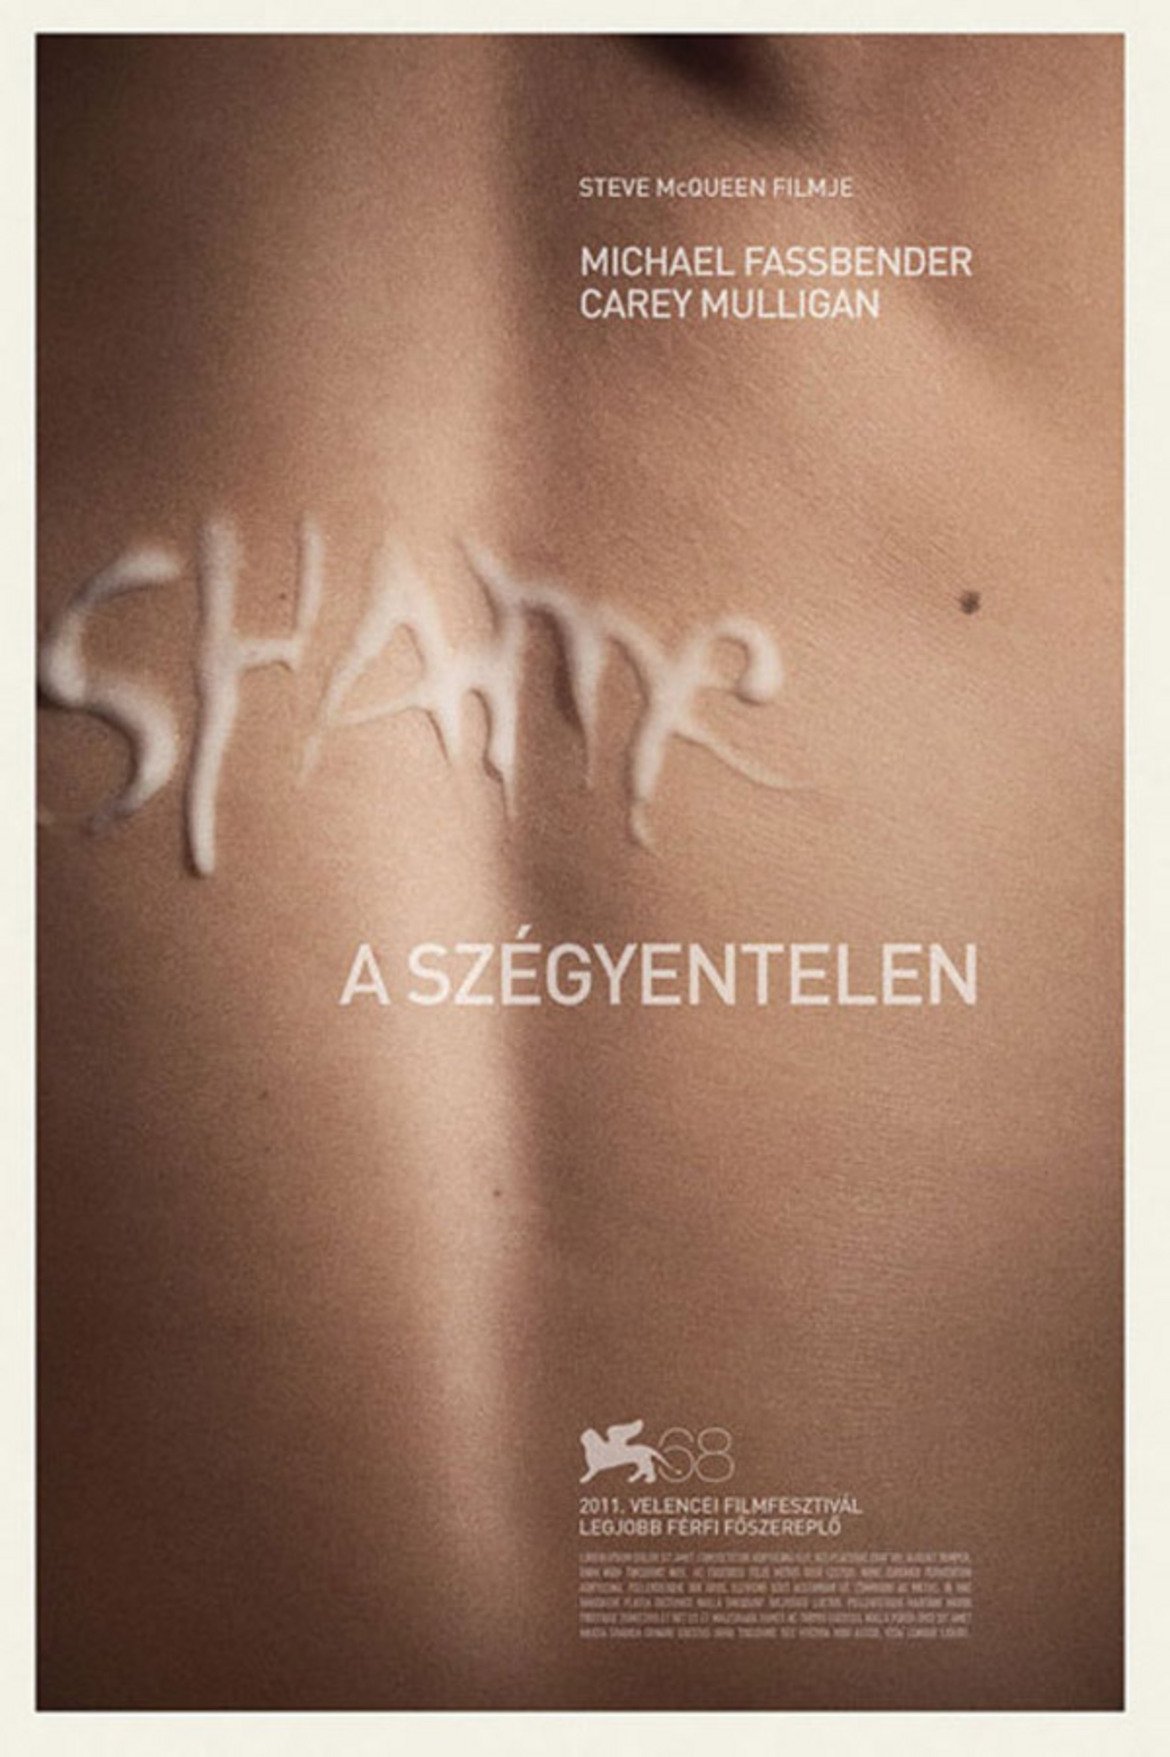 Shame / Срам
Един от най-сигурните начини да си докараш забрана на плаката, е да изпишеш името на филма със семенна течност. Вярно, става въпрос за история за човек, борещ се с пристрастяването си към секса, но все пак. Въпреки това забраната в случая само привлича допълнително внимание към филма, което за създателите му си е позитив.